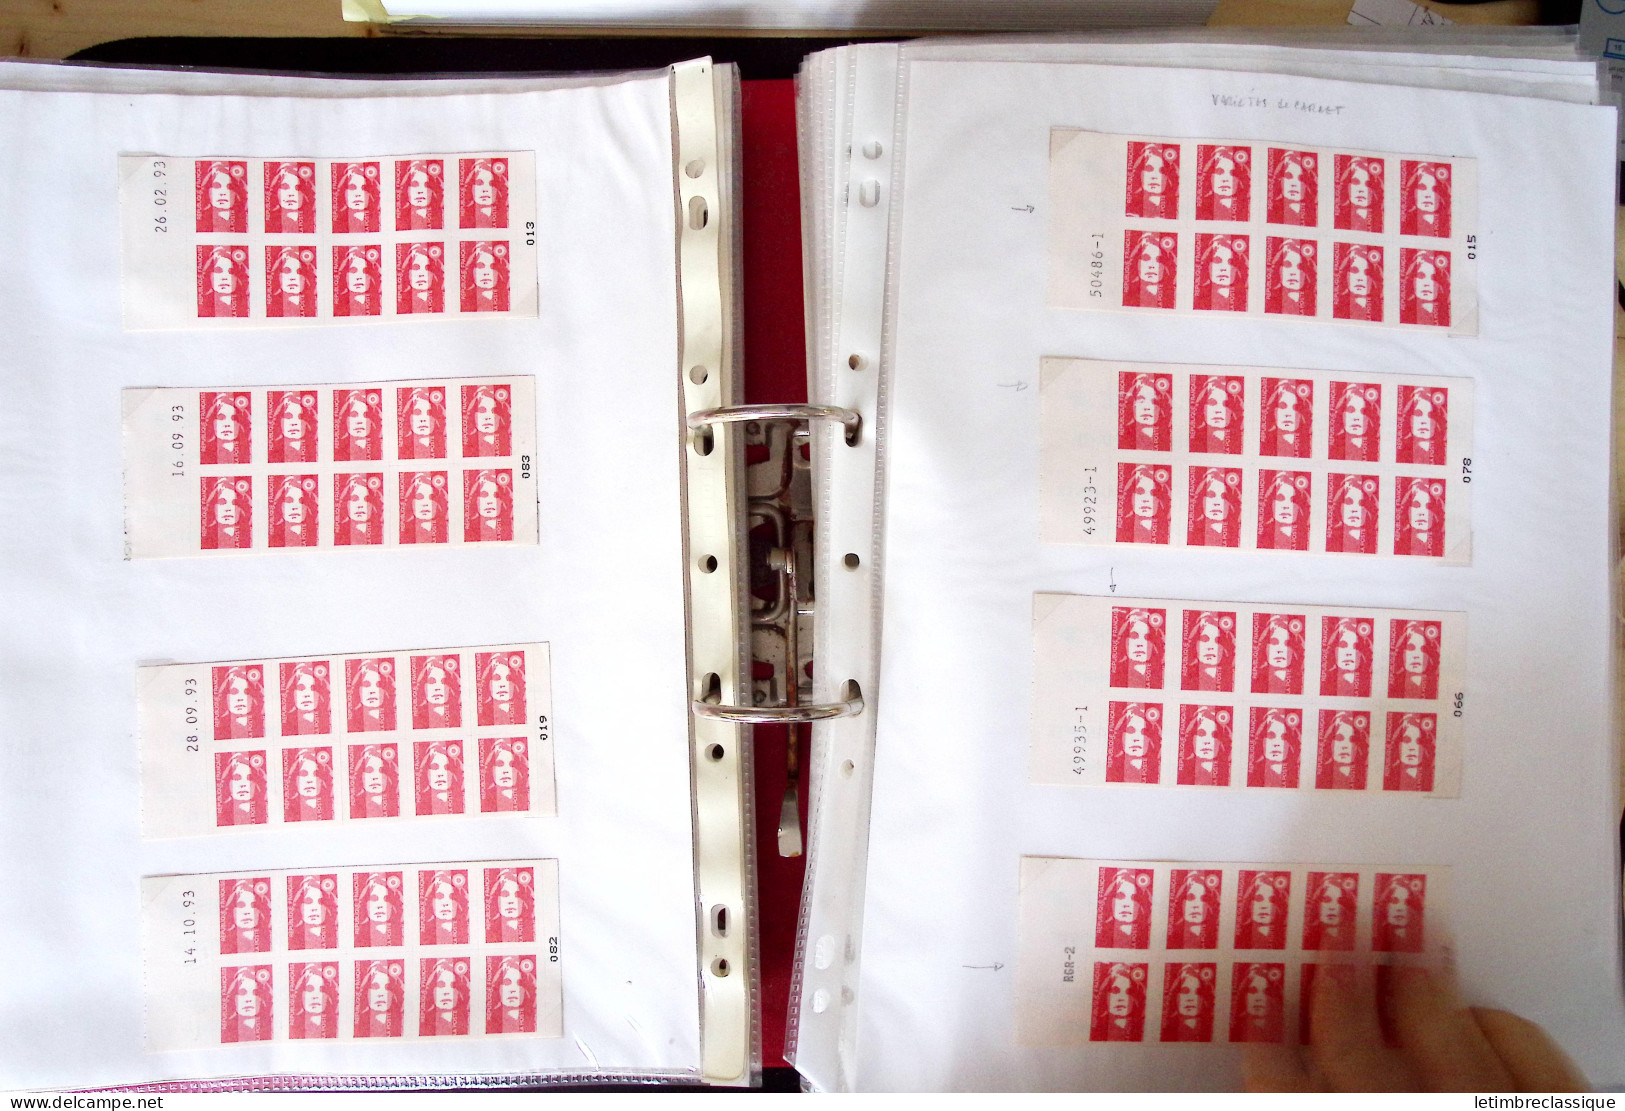 **,lettre Collection de TVP Briat rouges plupart autocollants dans un classeur de bureau rouge : plus de 280 TVP neufs (